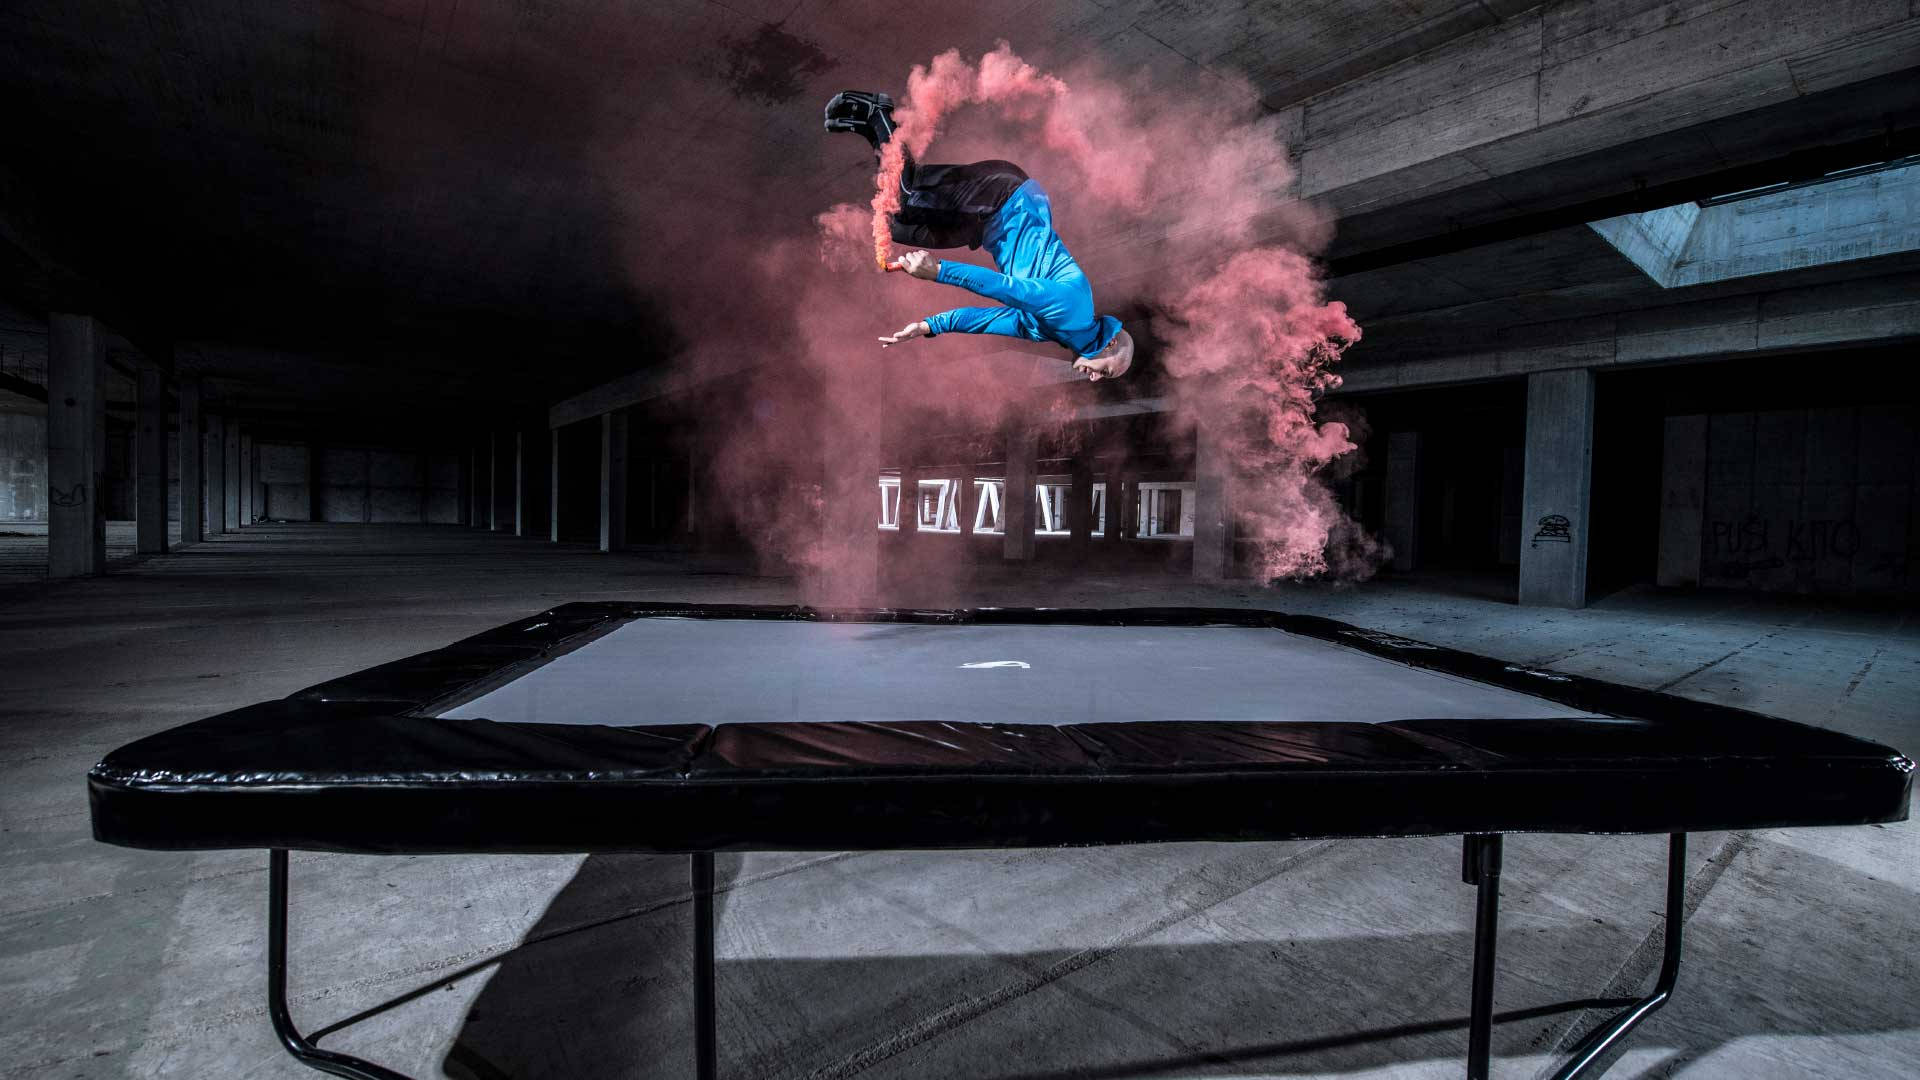 Mand udfører akrobat på trampolin med røg Wallpaper